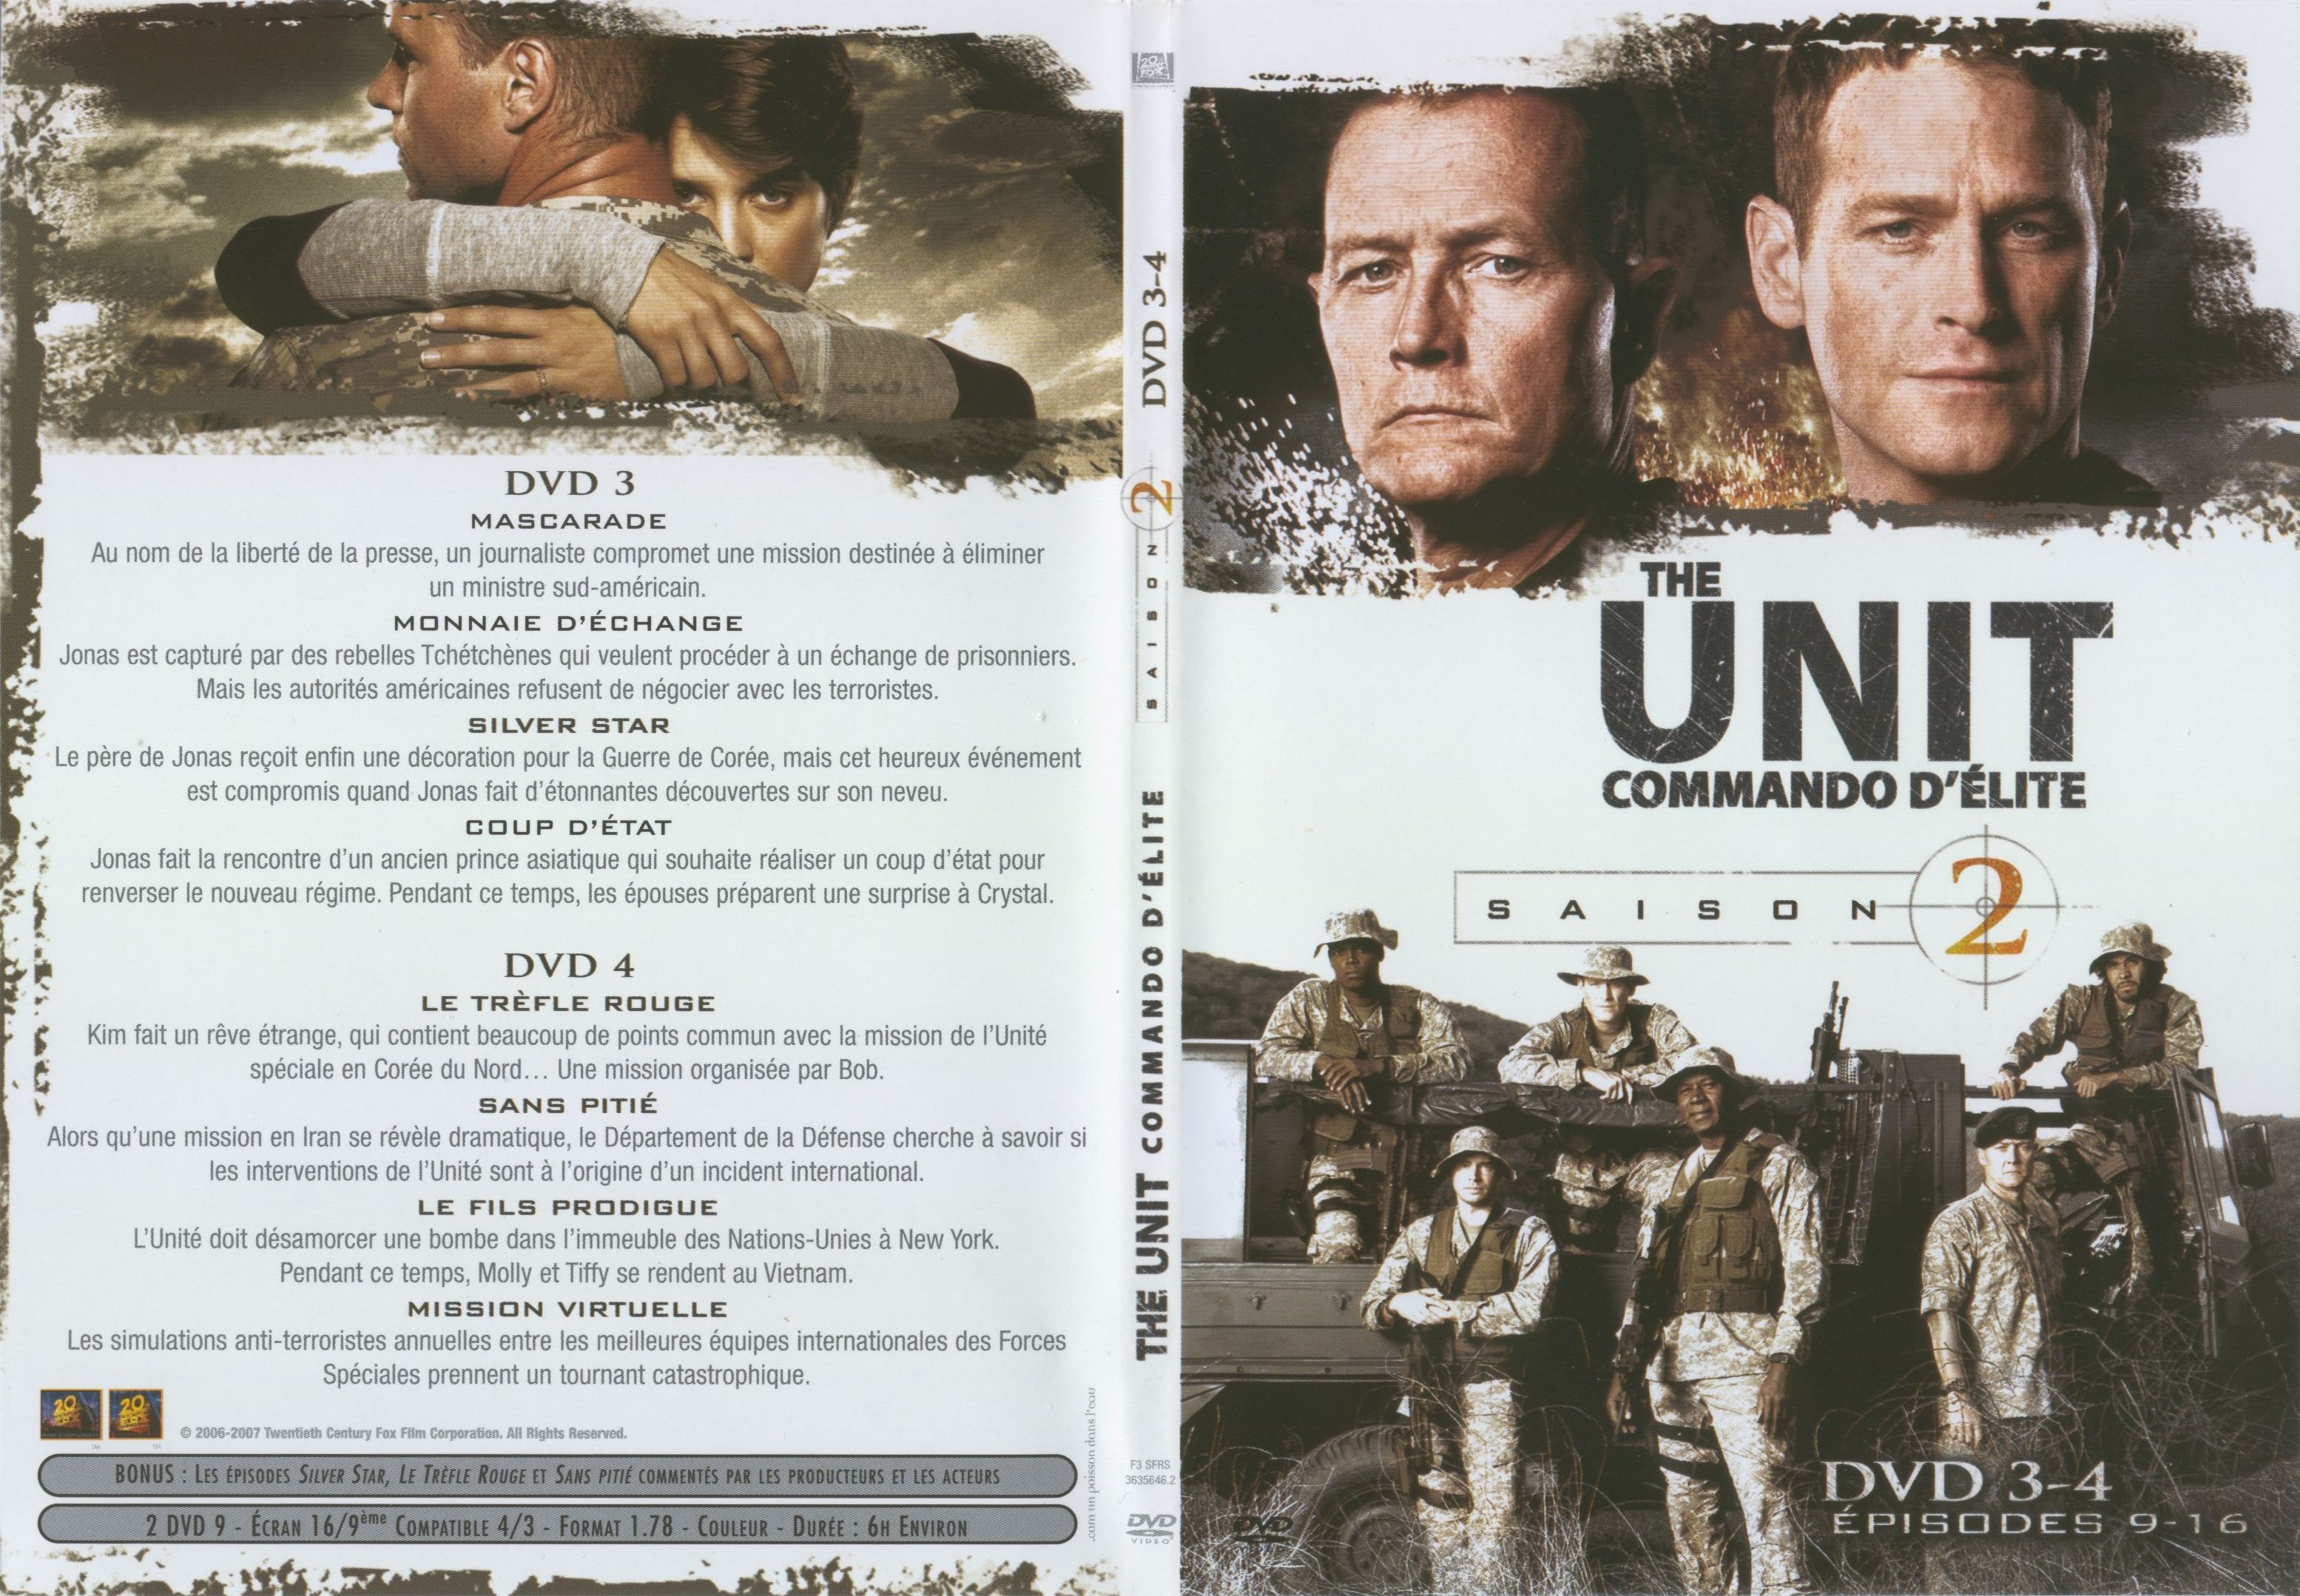 Jaquette DVD The unit saison 2 DVD 3-4